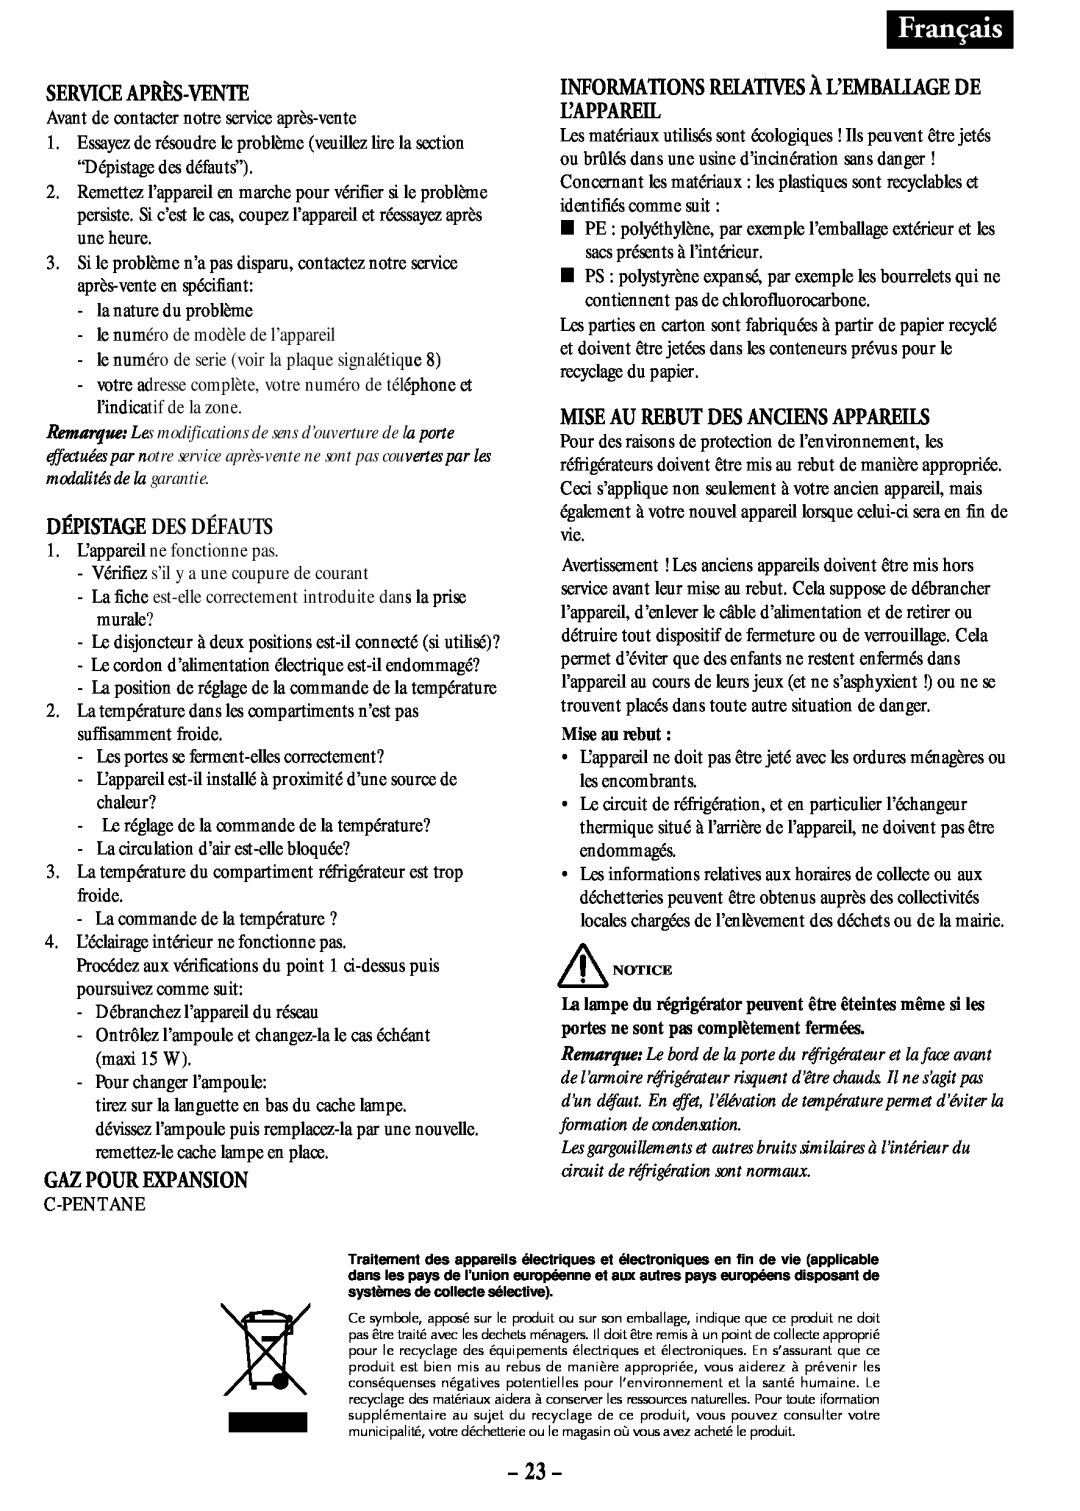 Opteka NF-347, NF1-370, NF1-350, NF-340 manual 23, Français, Service Après-Vente, Dépistage Des Défauts, Gaz Pour Expansion 